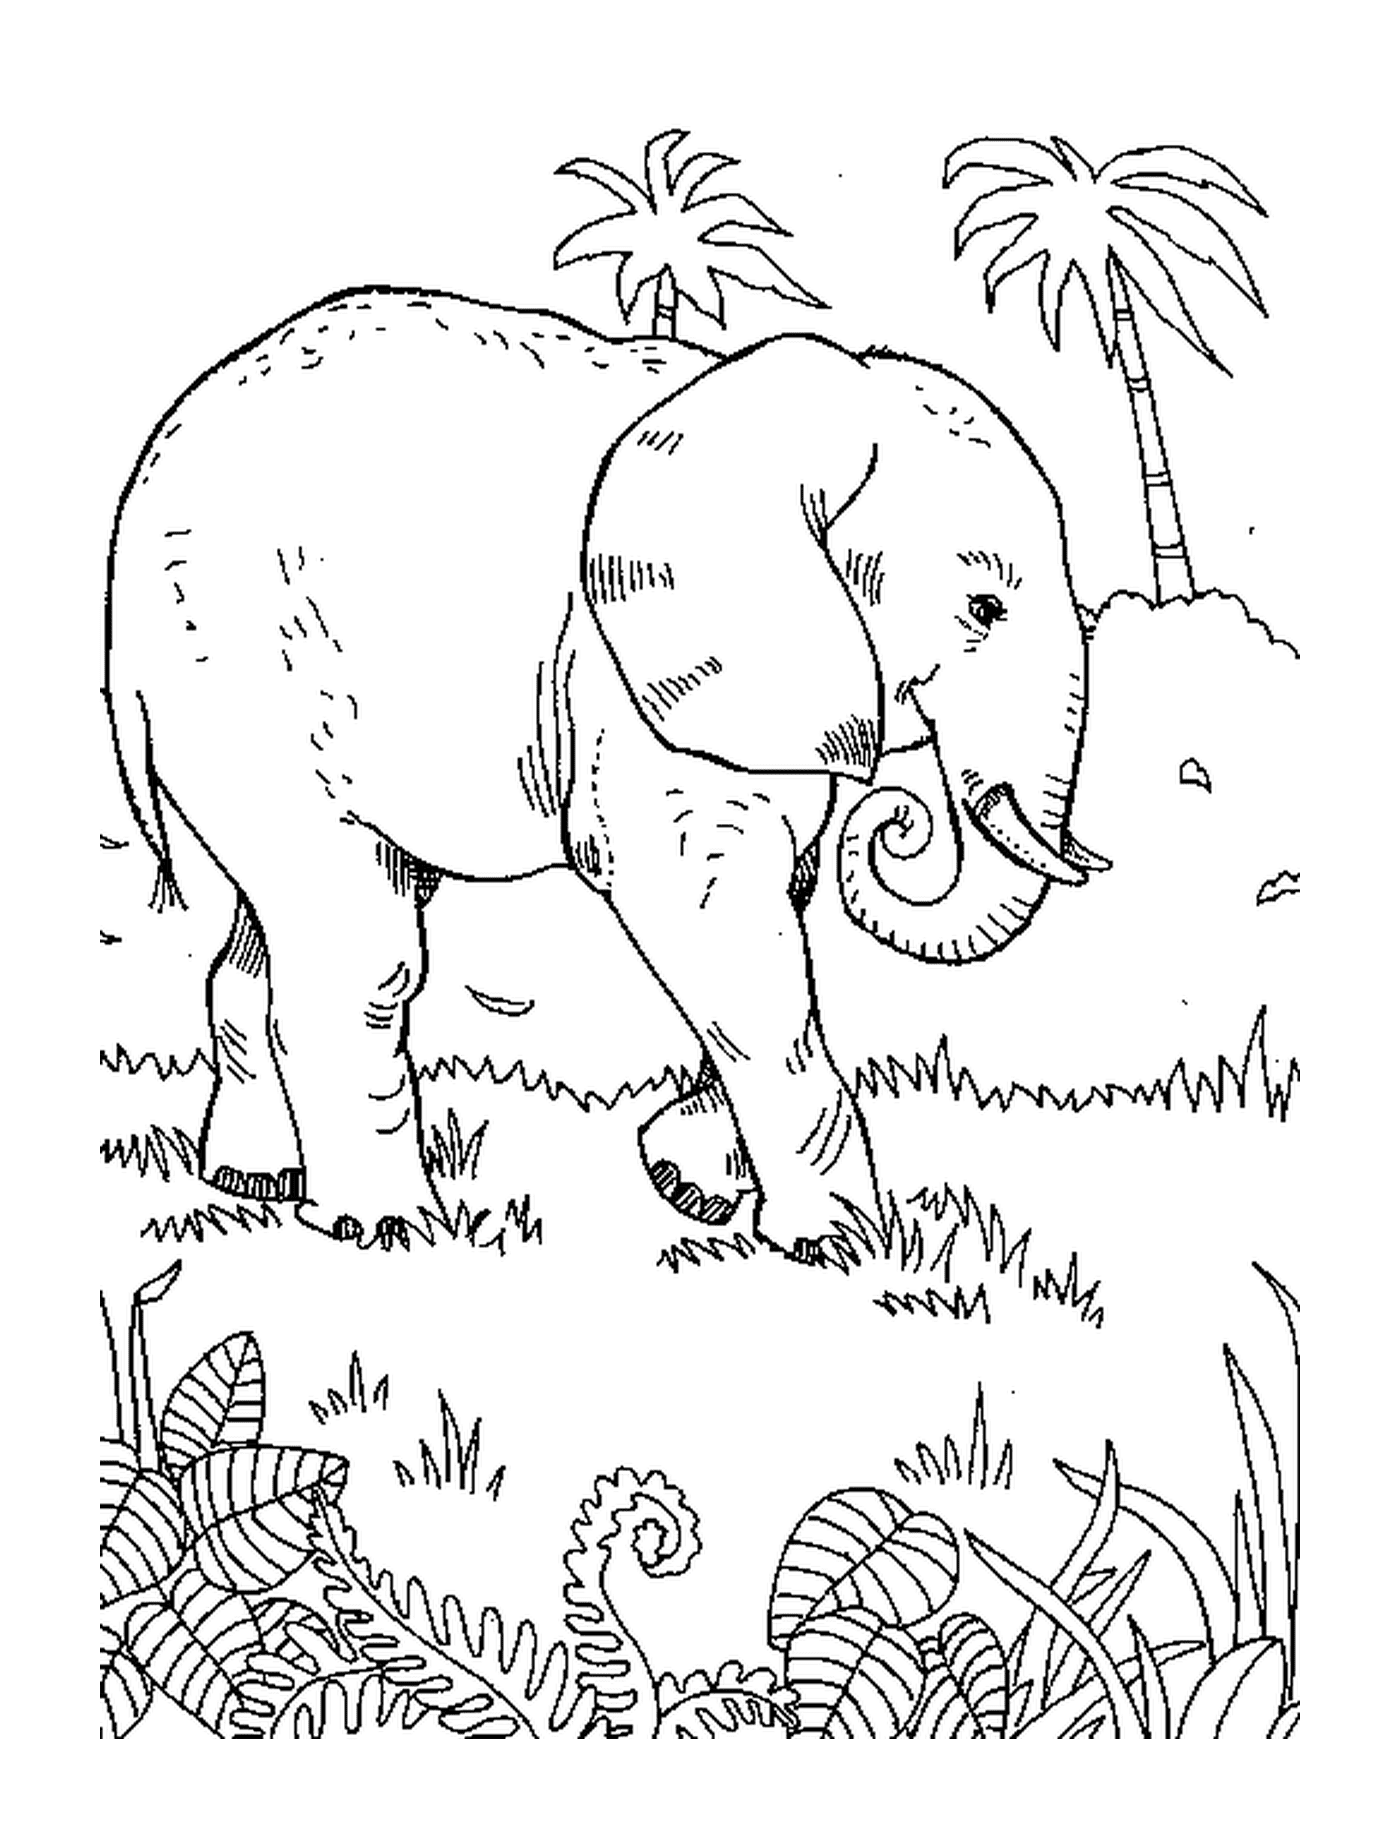  一只大象在棕榈树附近的草地上行走 